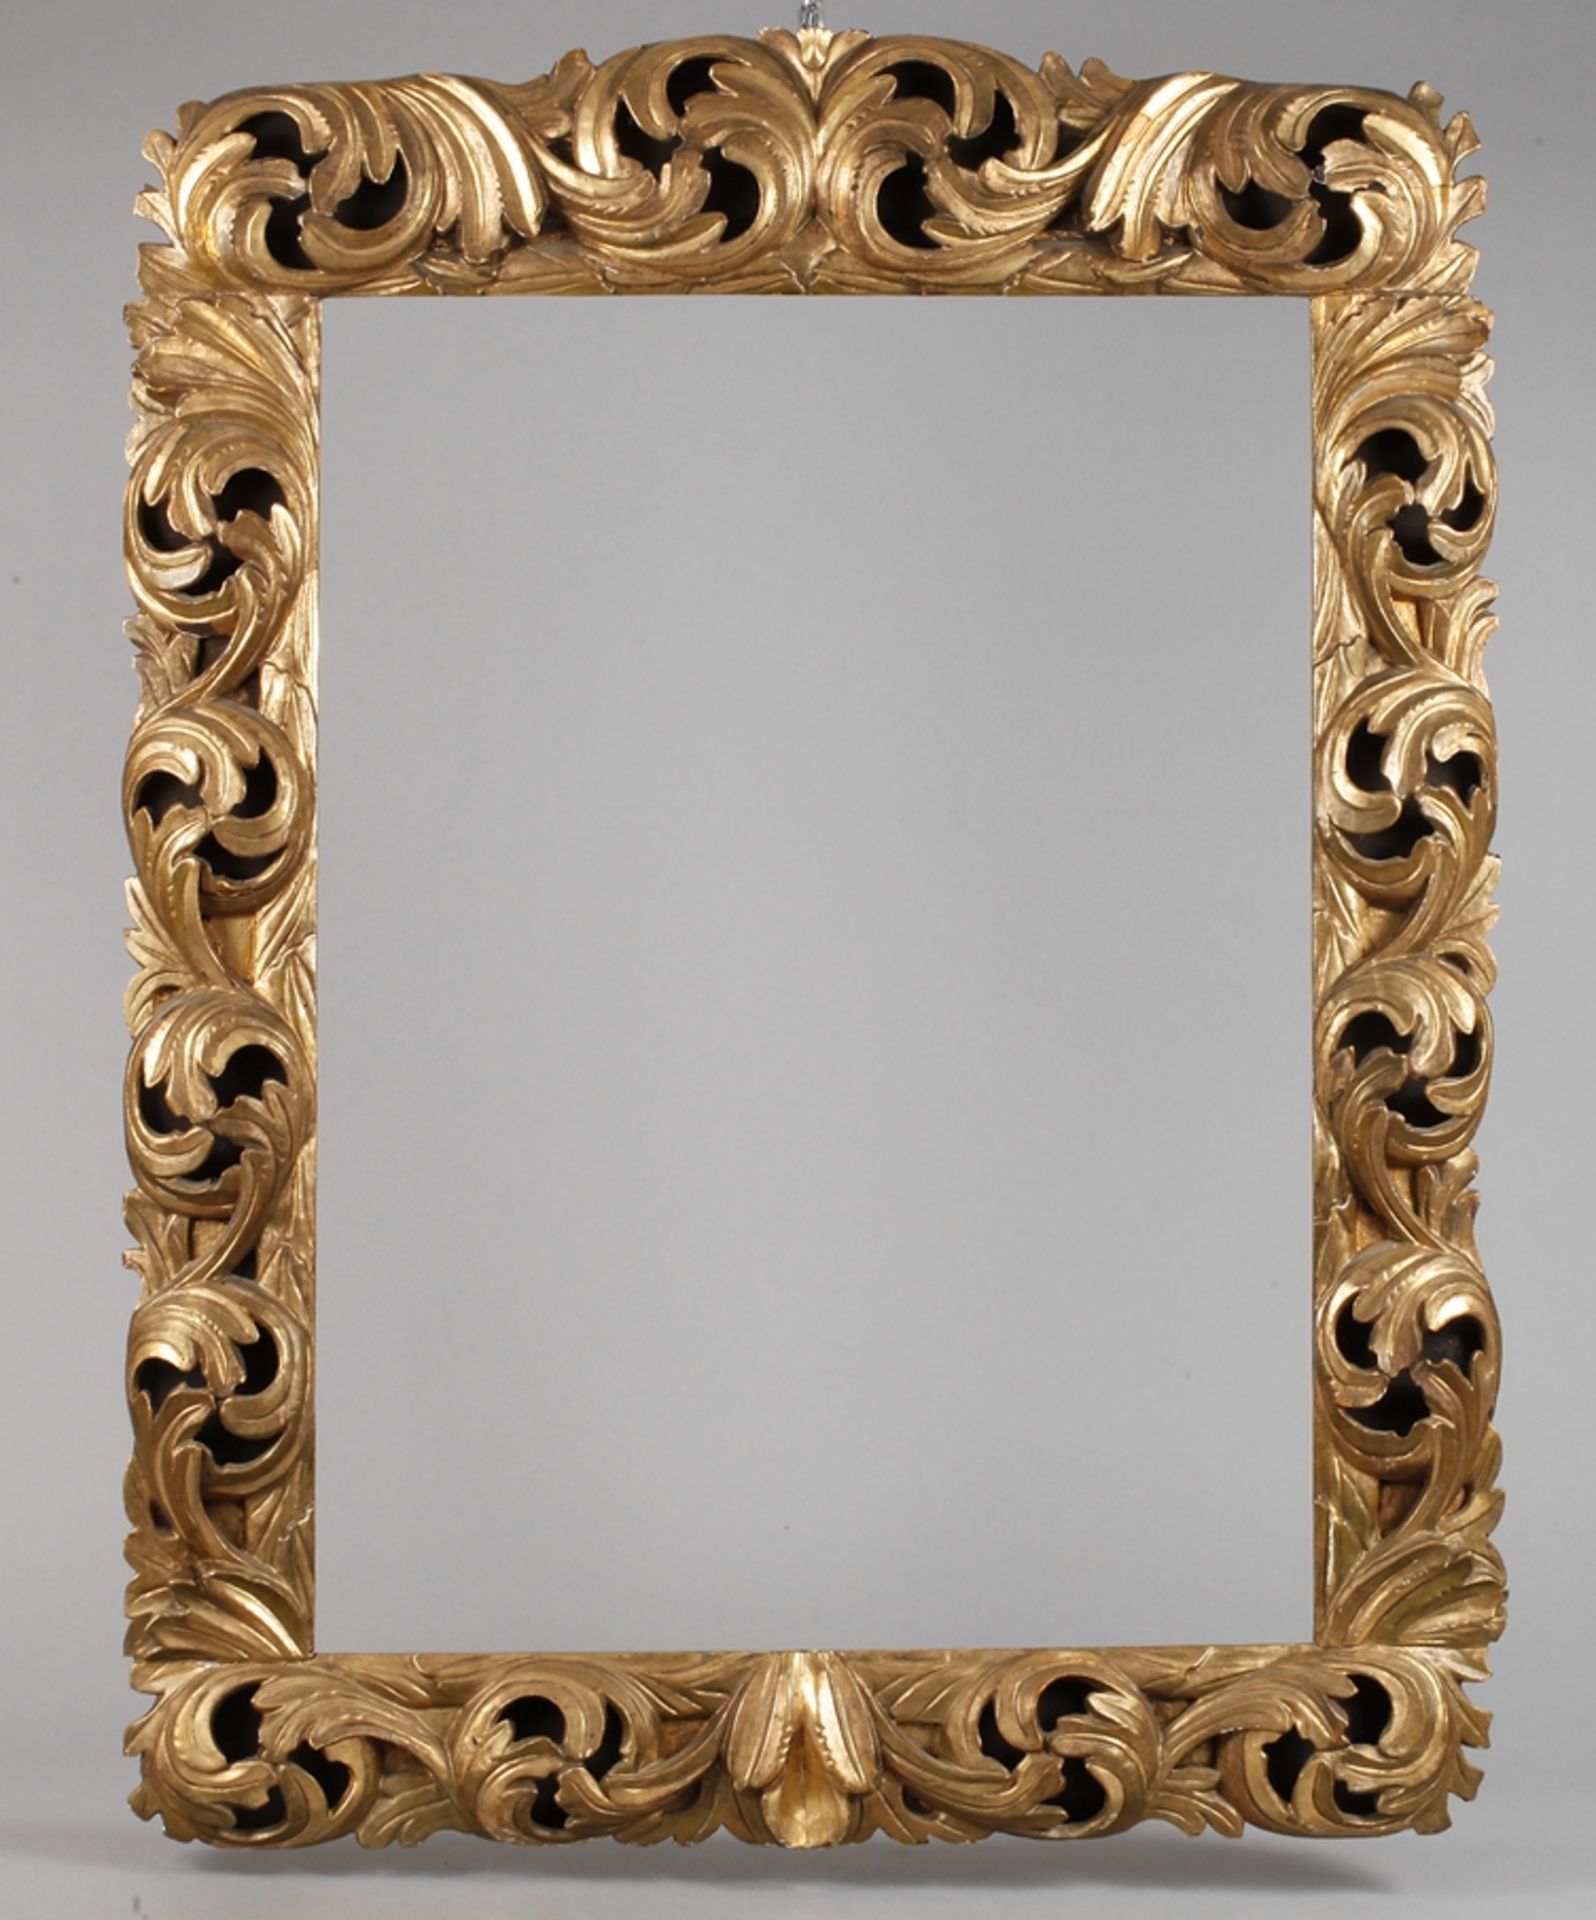 Qualitätsvoller Florentiner Rahmen19. Jh., aufwendig geschnitzt, hohl gearbeitet, blattvergoldet,